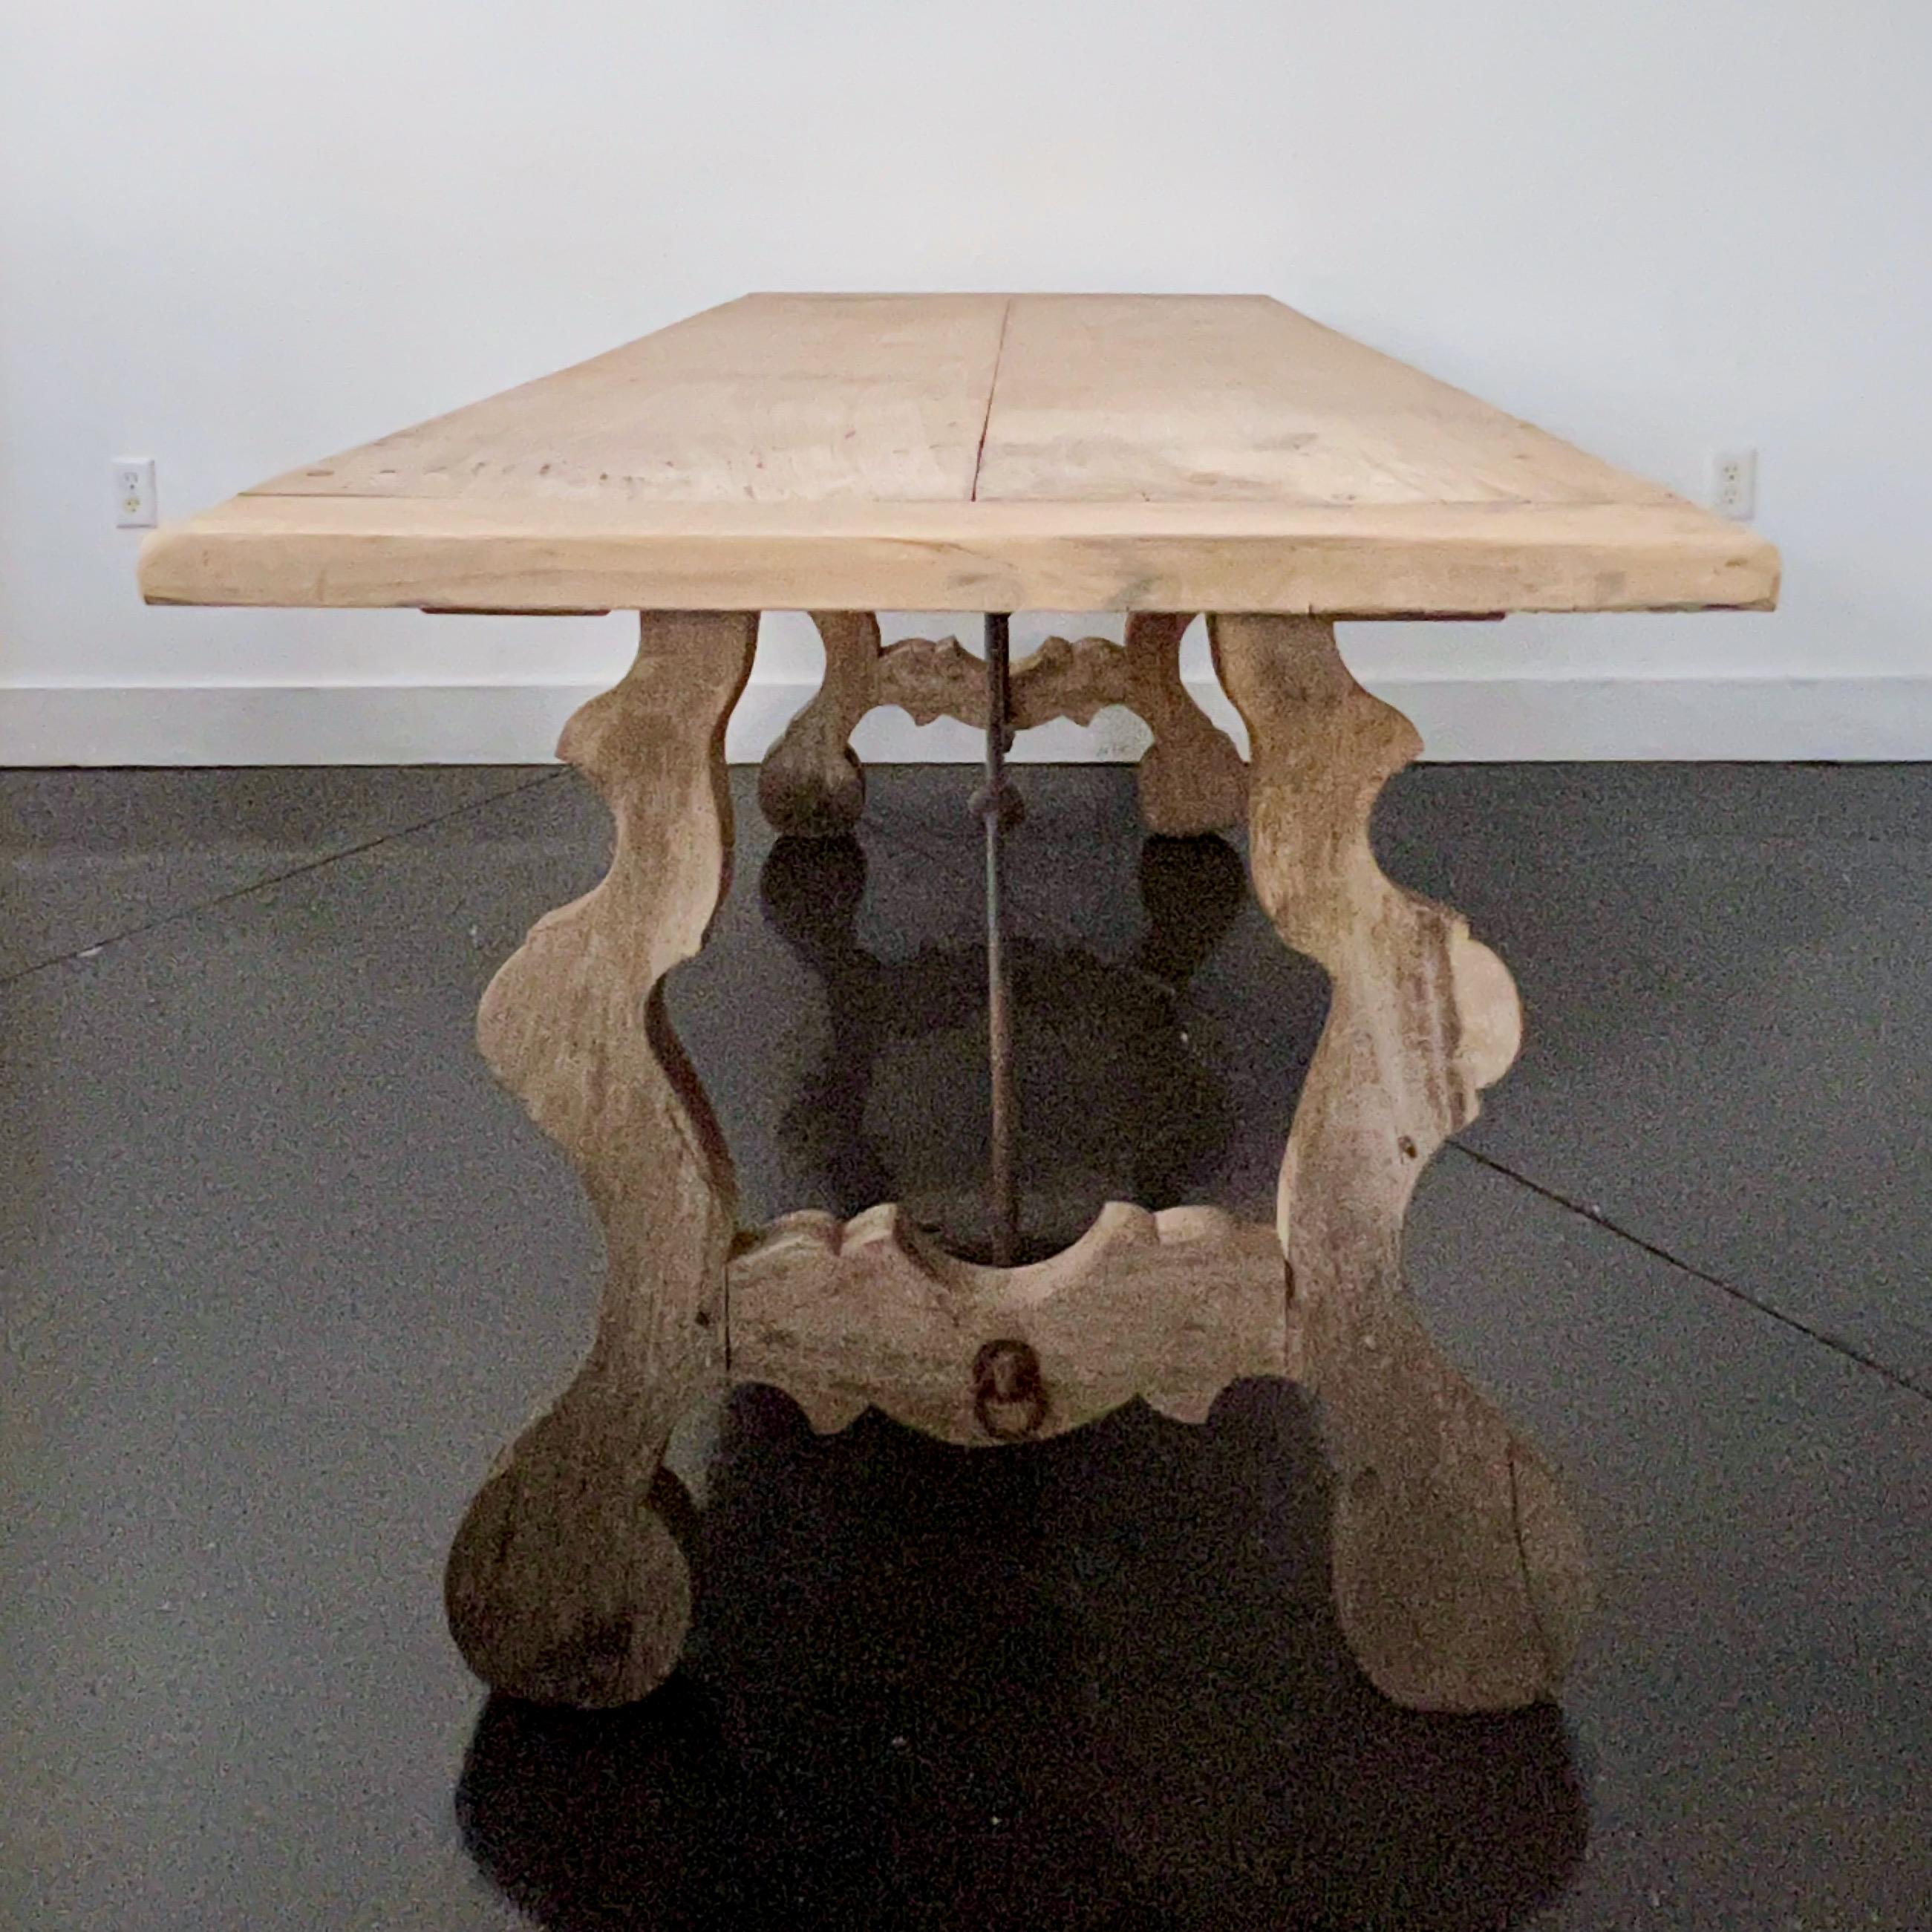 Table de salle à manger espagnole du 18e siècle, superbement patinée, avec une base à tréteaux et des supports en fer forgé, typiques des tables espagnoles. Les pieds ont une forme de lyre classique et soutiennent un plateau en planches